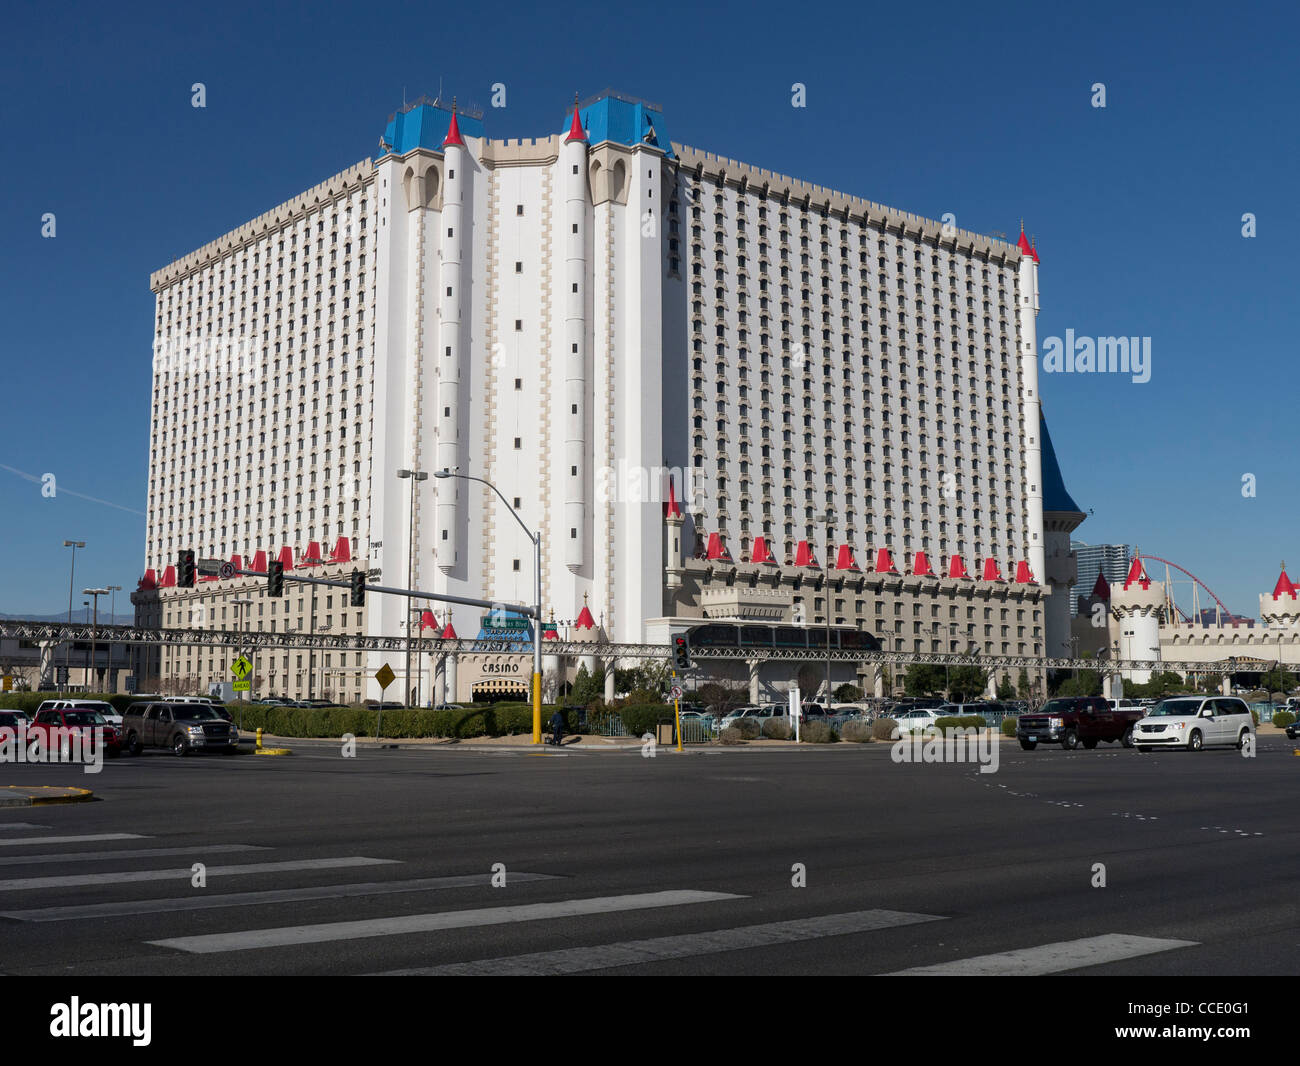 Il gigante Excalibur Hotel and casino resort all'estremità sud del Las Vegas Boulevard è stato uno dei primi alberghi a tema di Las Vegas Foto Stock